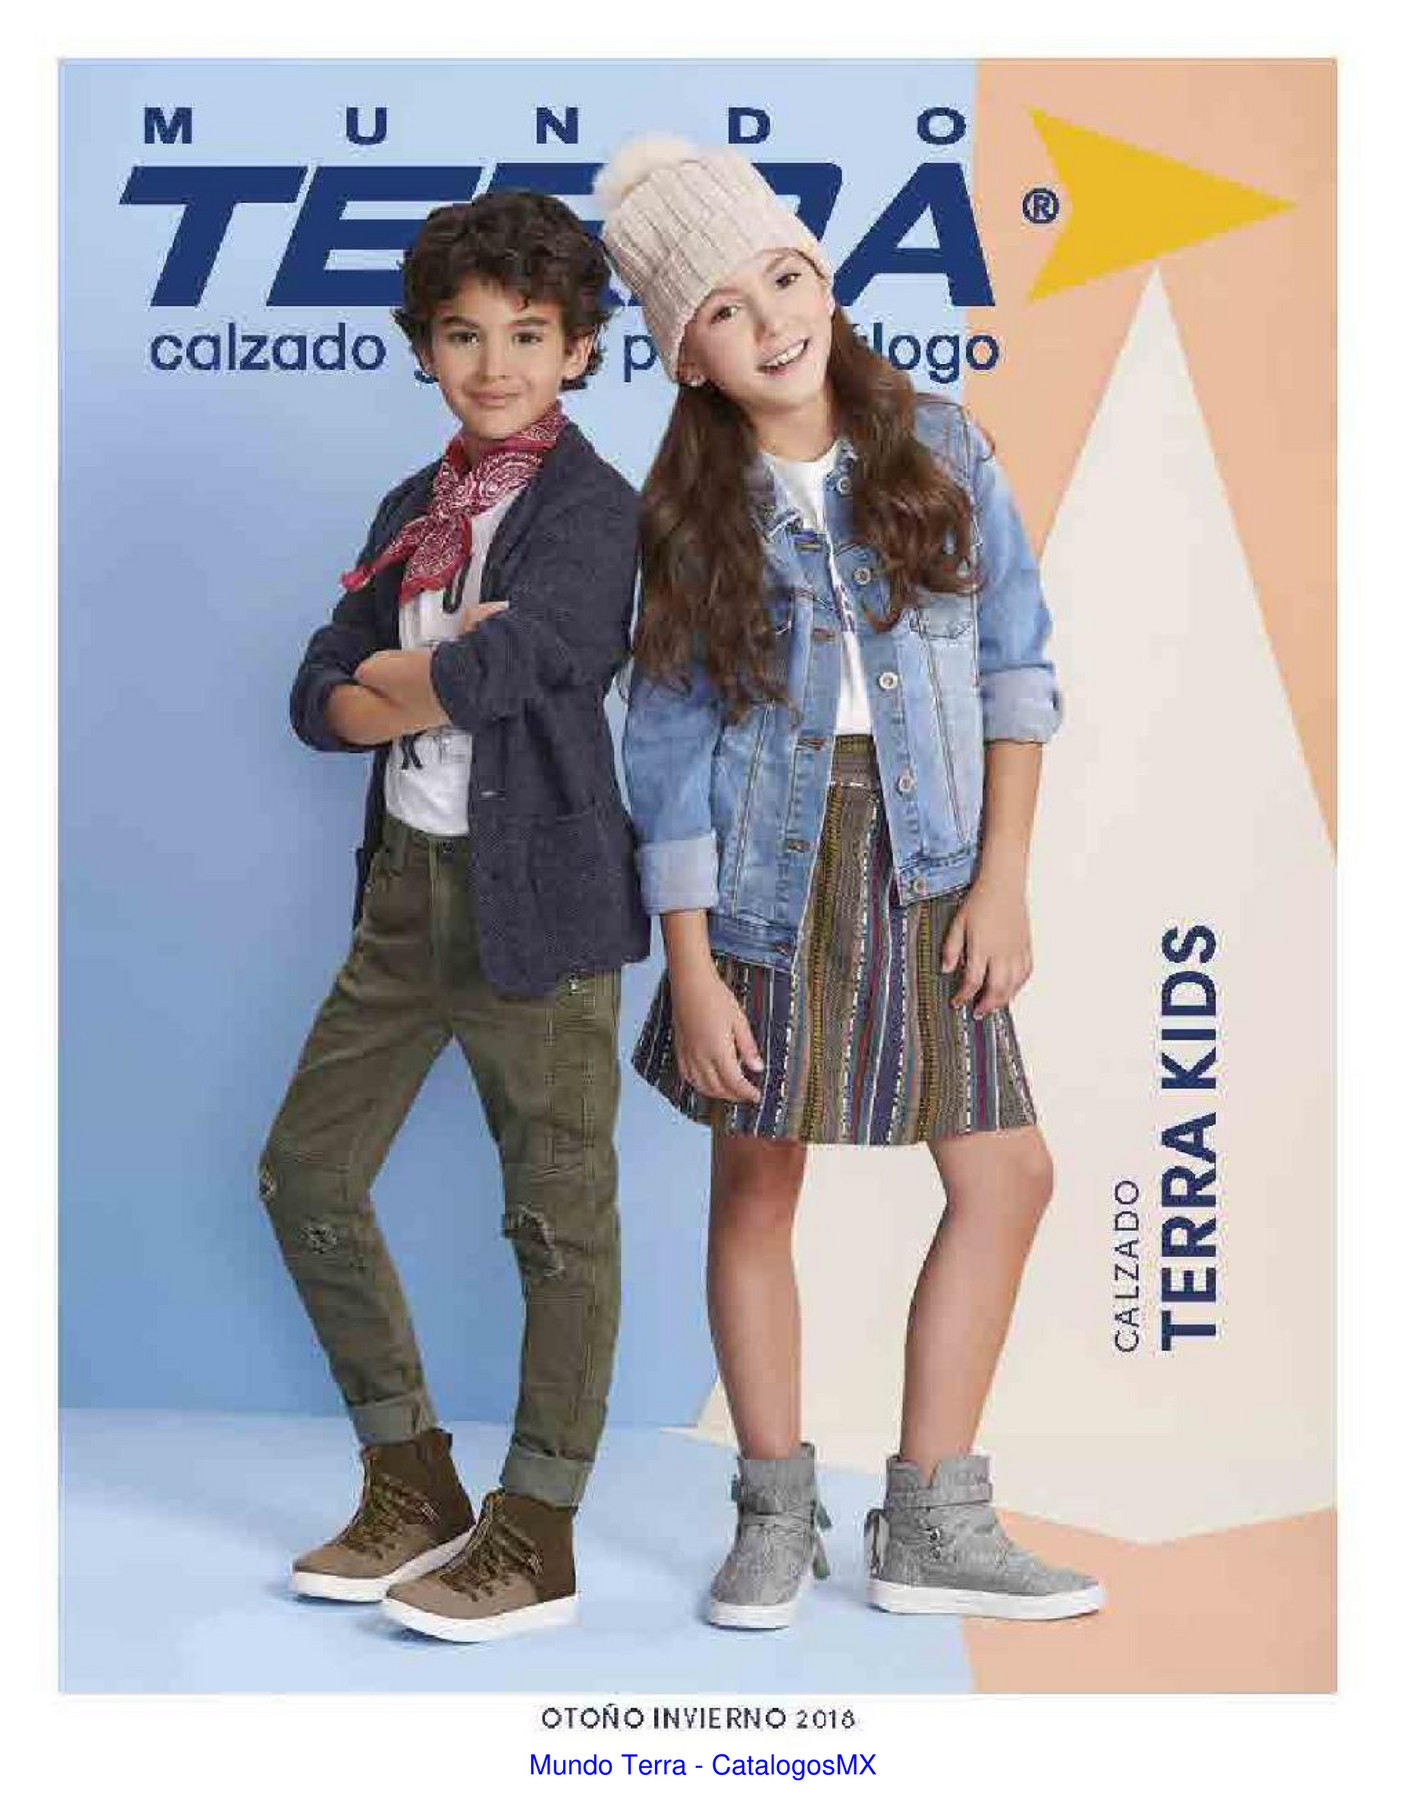 catalog - Kids M TE OI18 - Página 2-3 - Created with Publitas.com